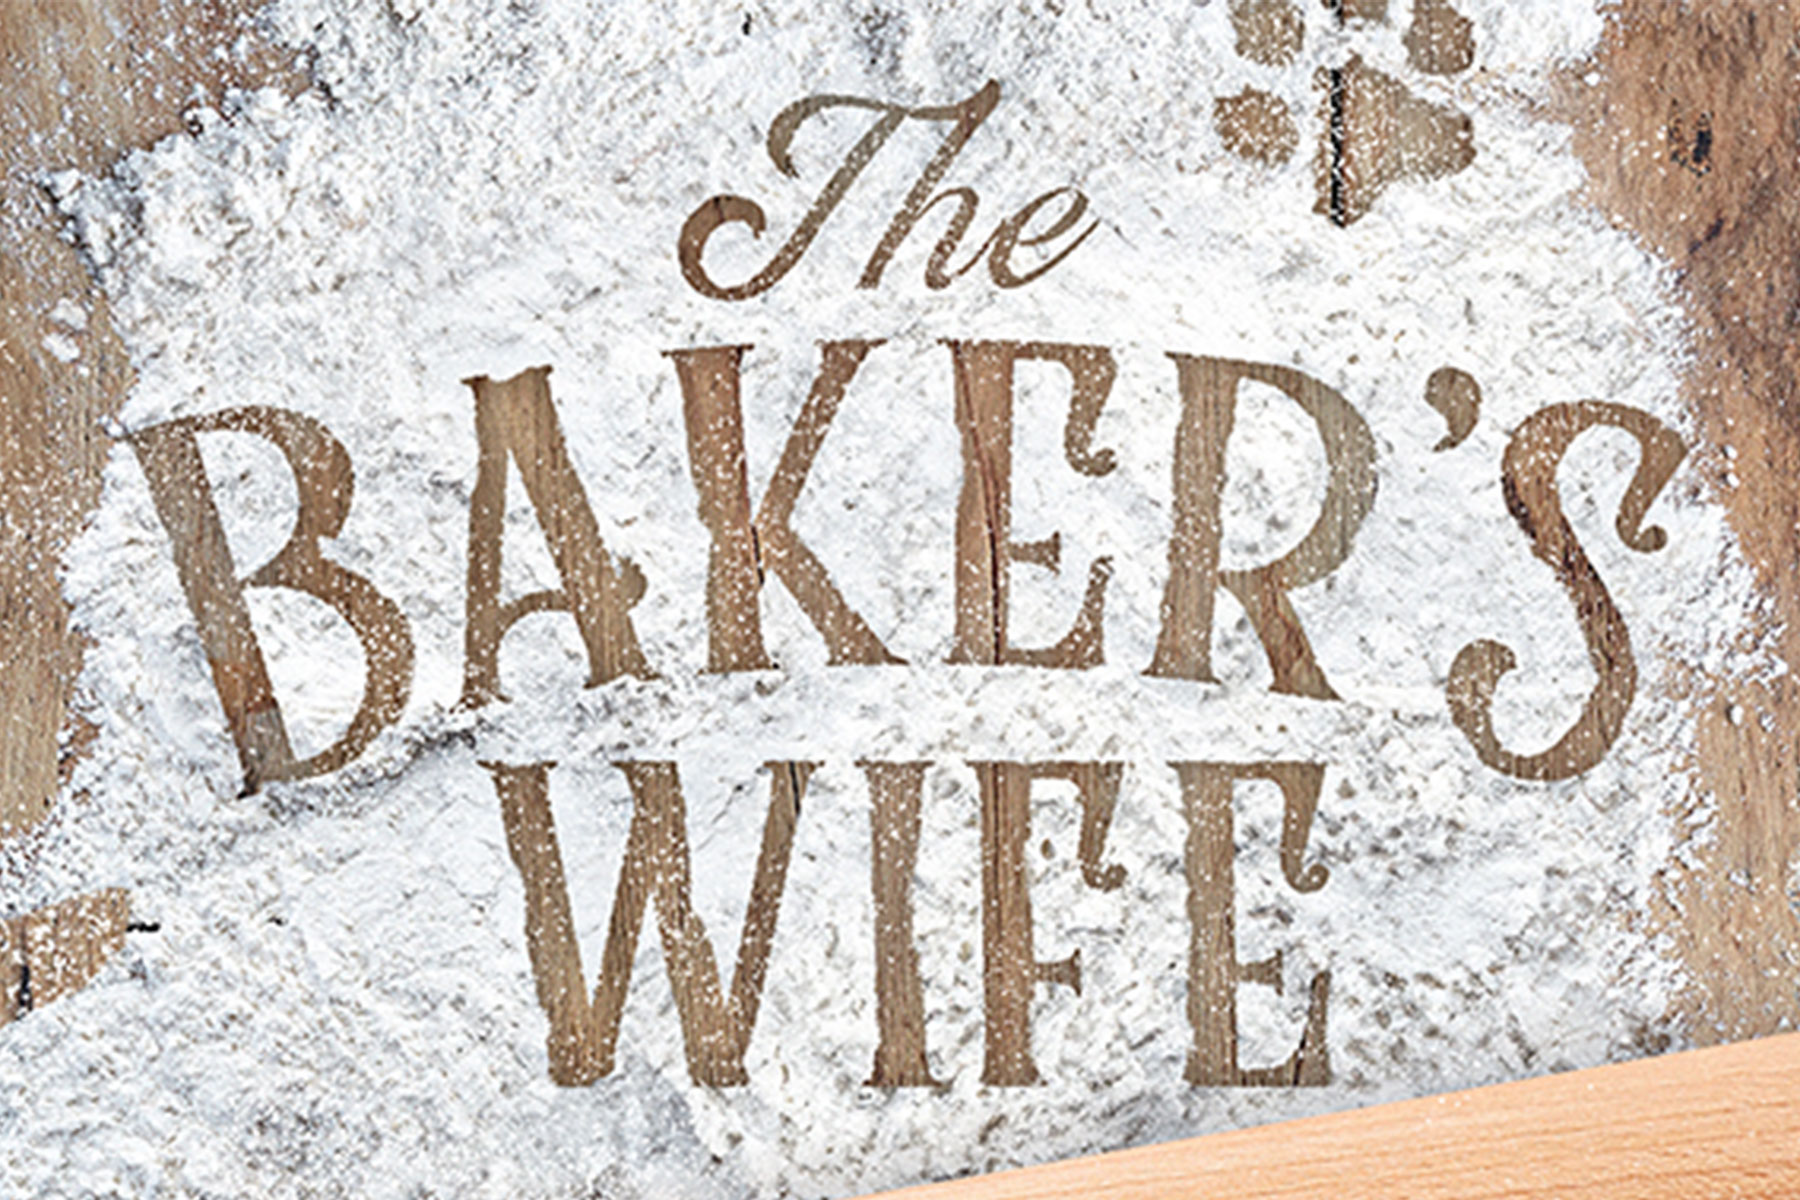 Artwork for The Baker's Wife